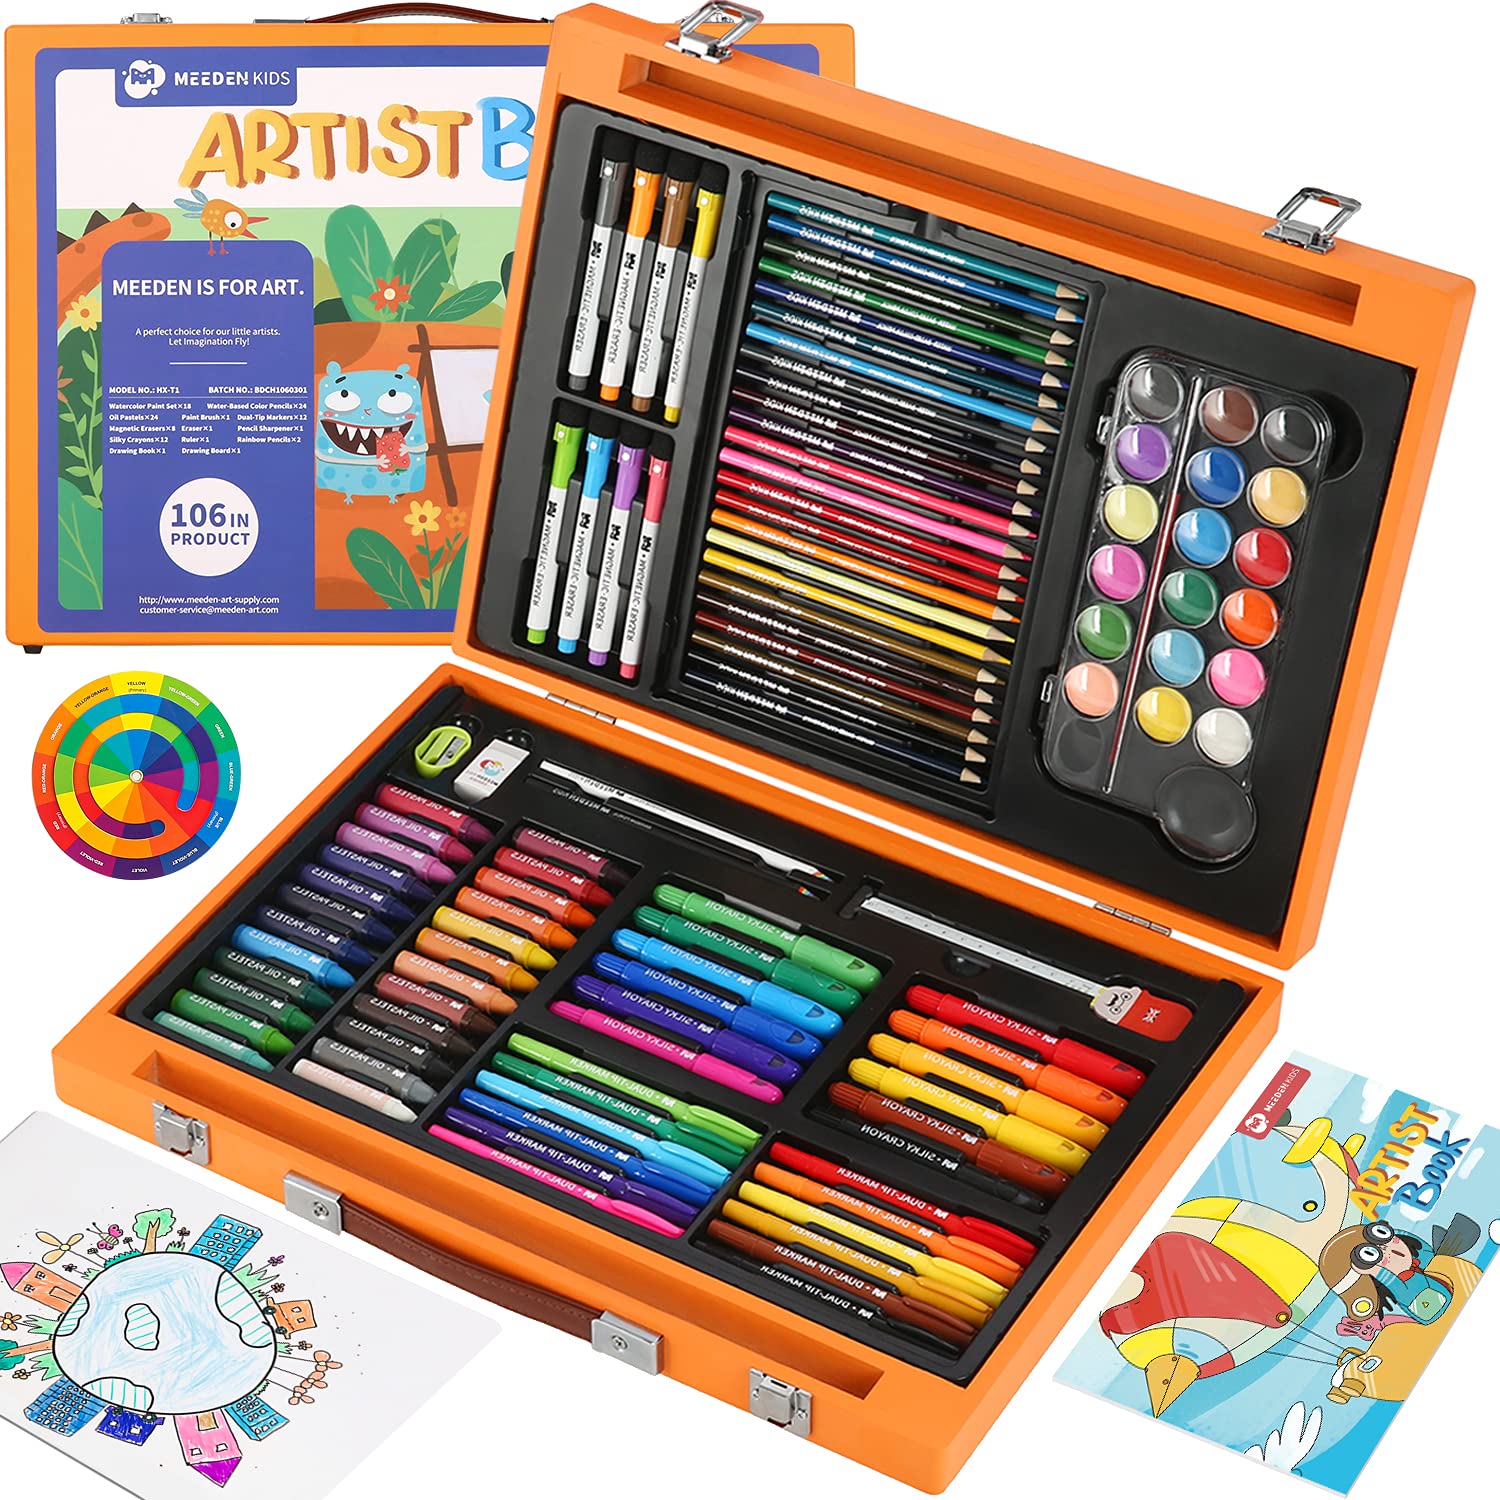 Imagination Coloring Set, Art Gift for Kids, Crayola.com